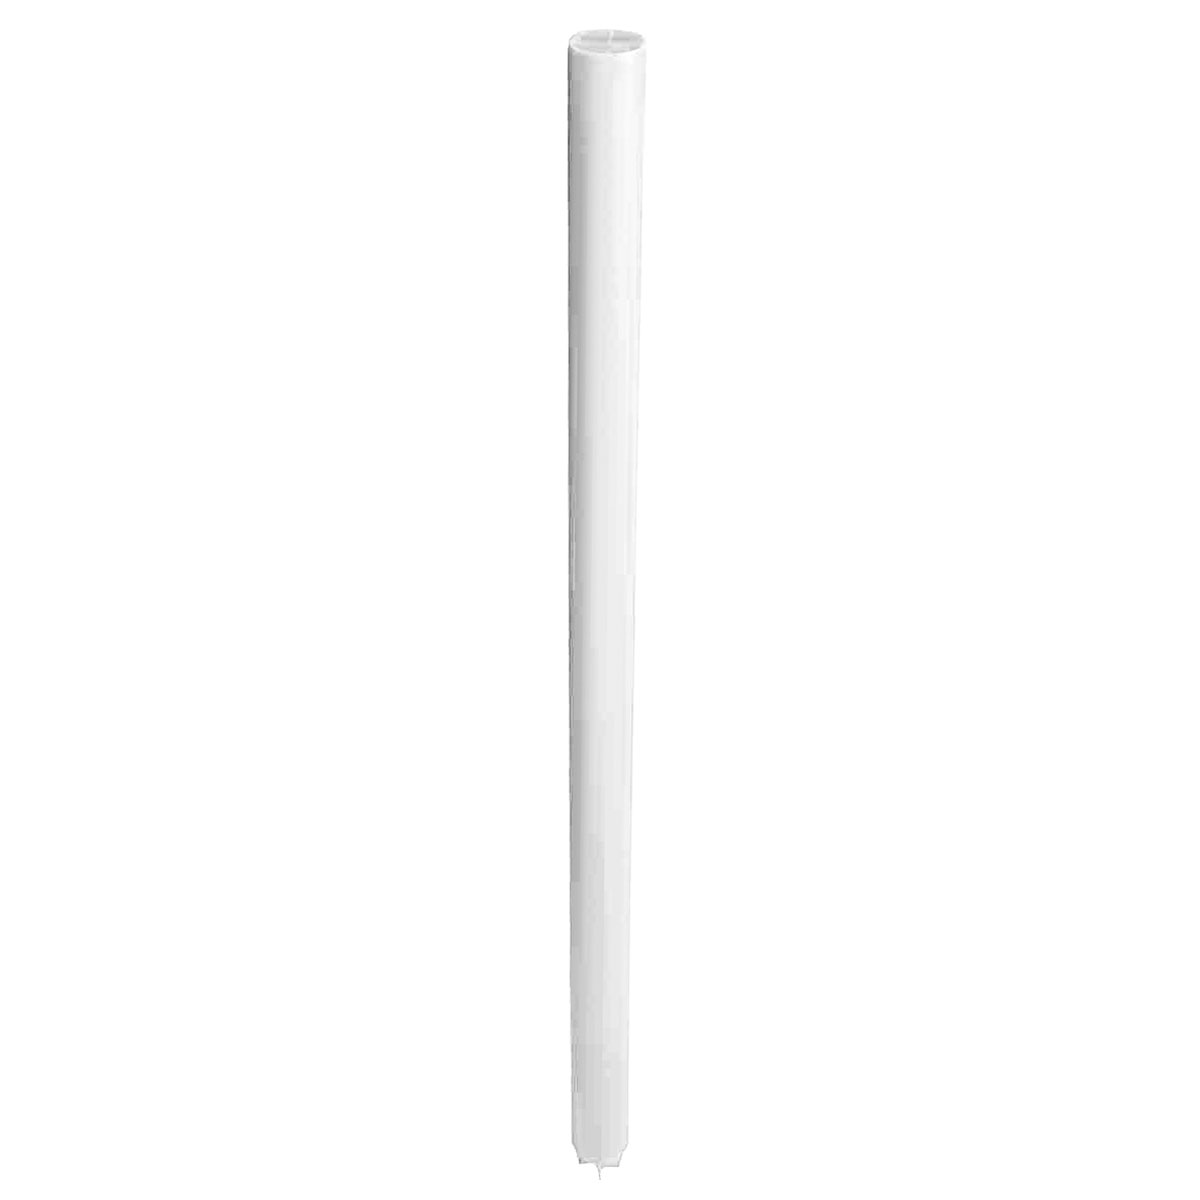 Markierungsrohr Ø 50 mm, weiß, Länge 1 m Kunststoff - PE, kreuzverstärkt und angespitzt